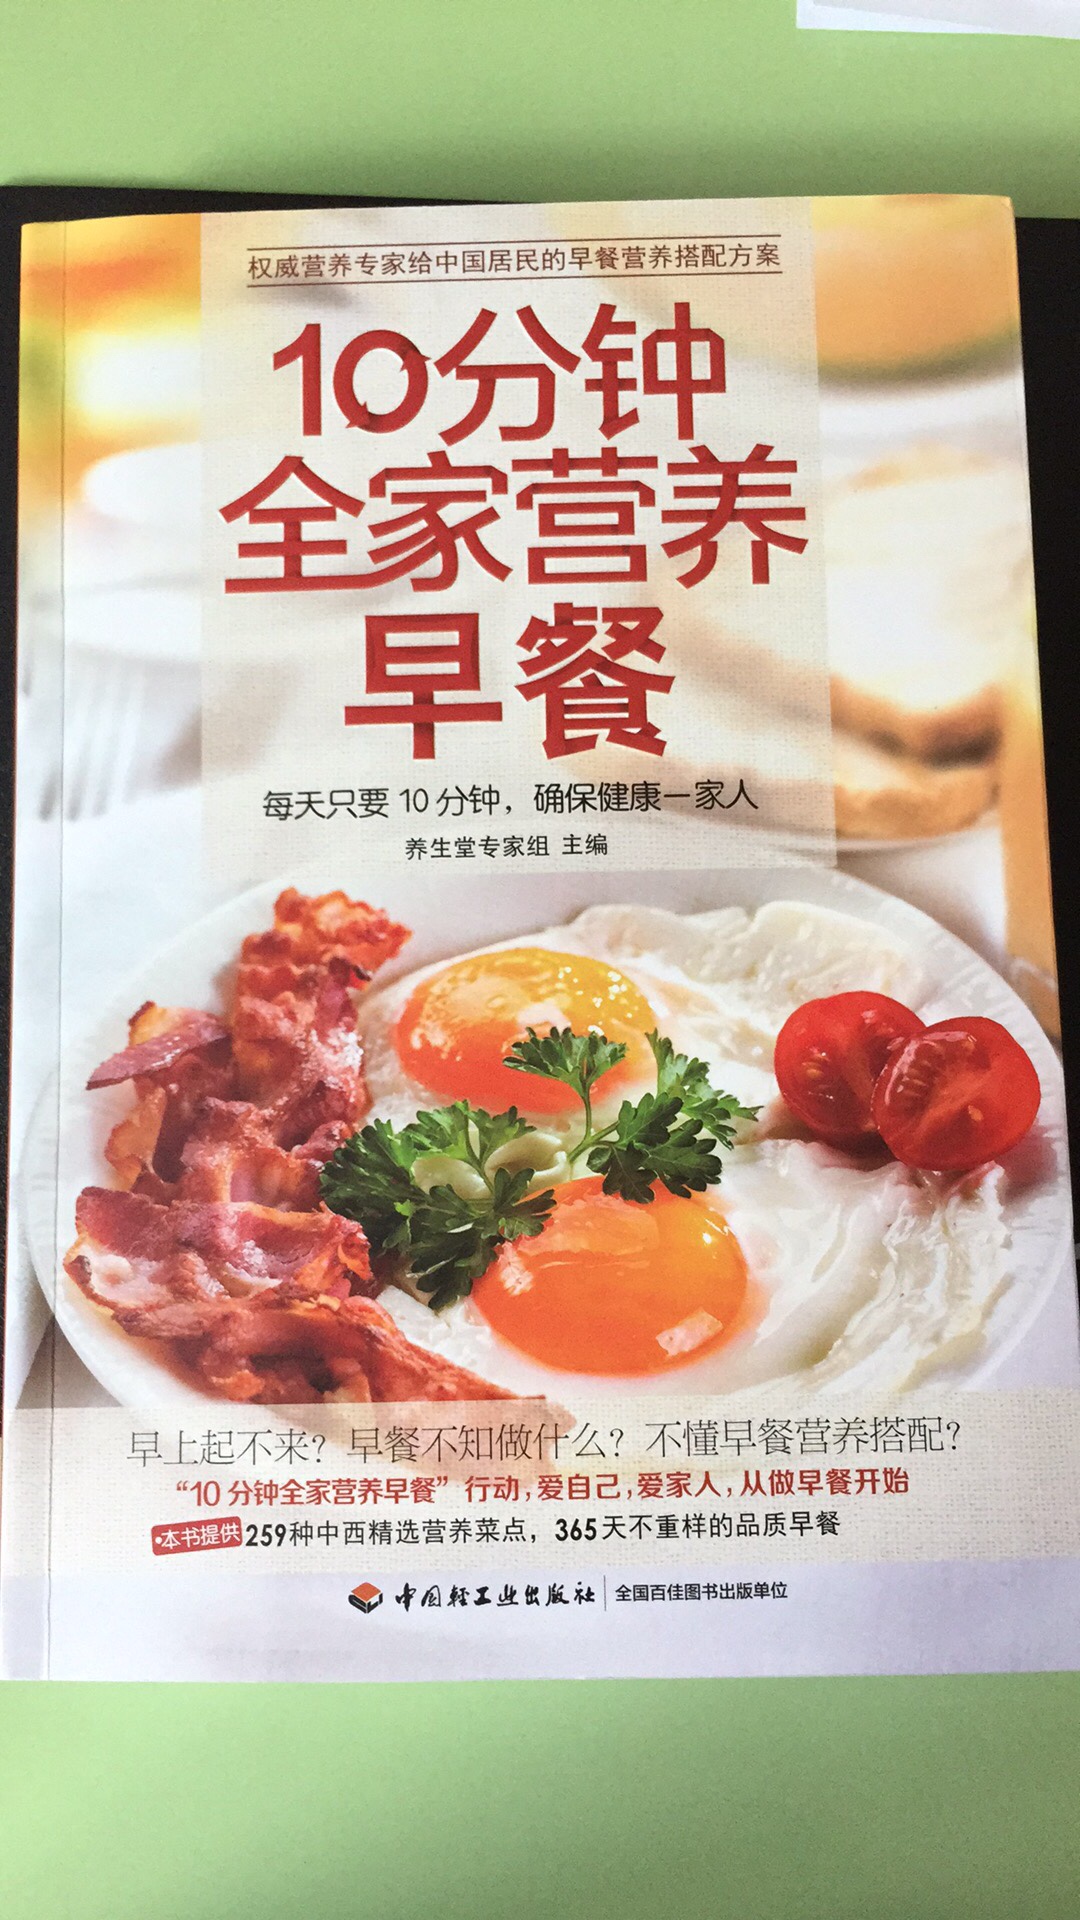 这本早餐书非常喜欢 包装印刷精美 全部都是彩页配图 内容丰富 可以好好的照书学习做早餐啦 营养丰富身体好的早餐即将开启